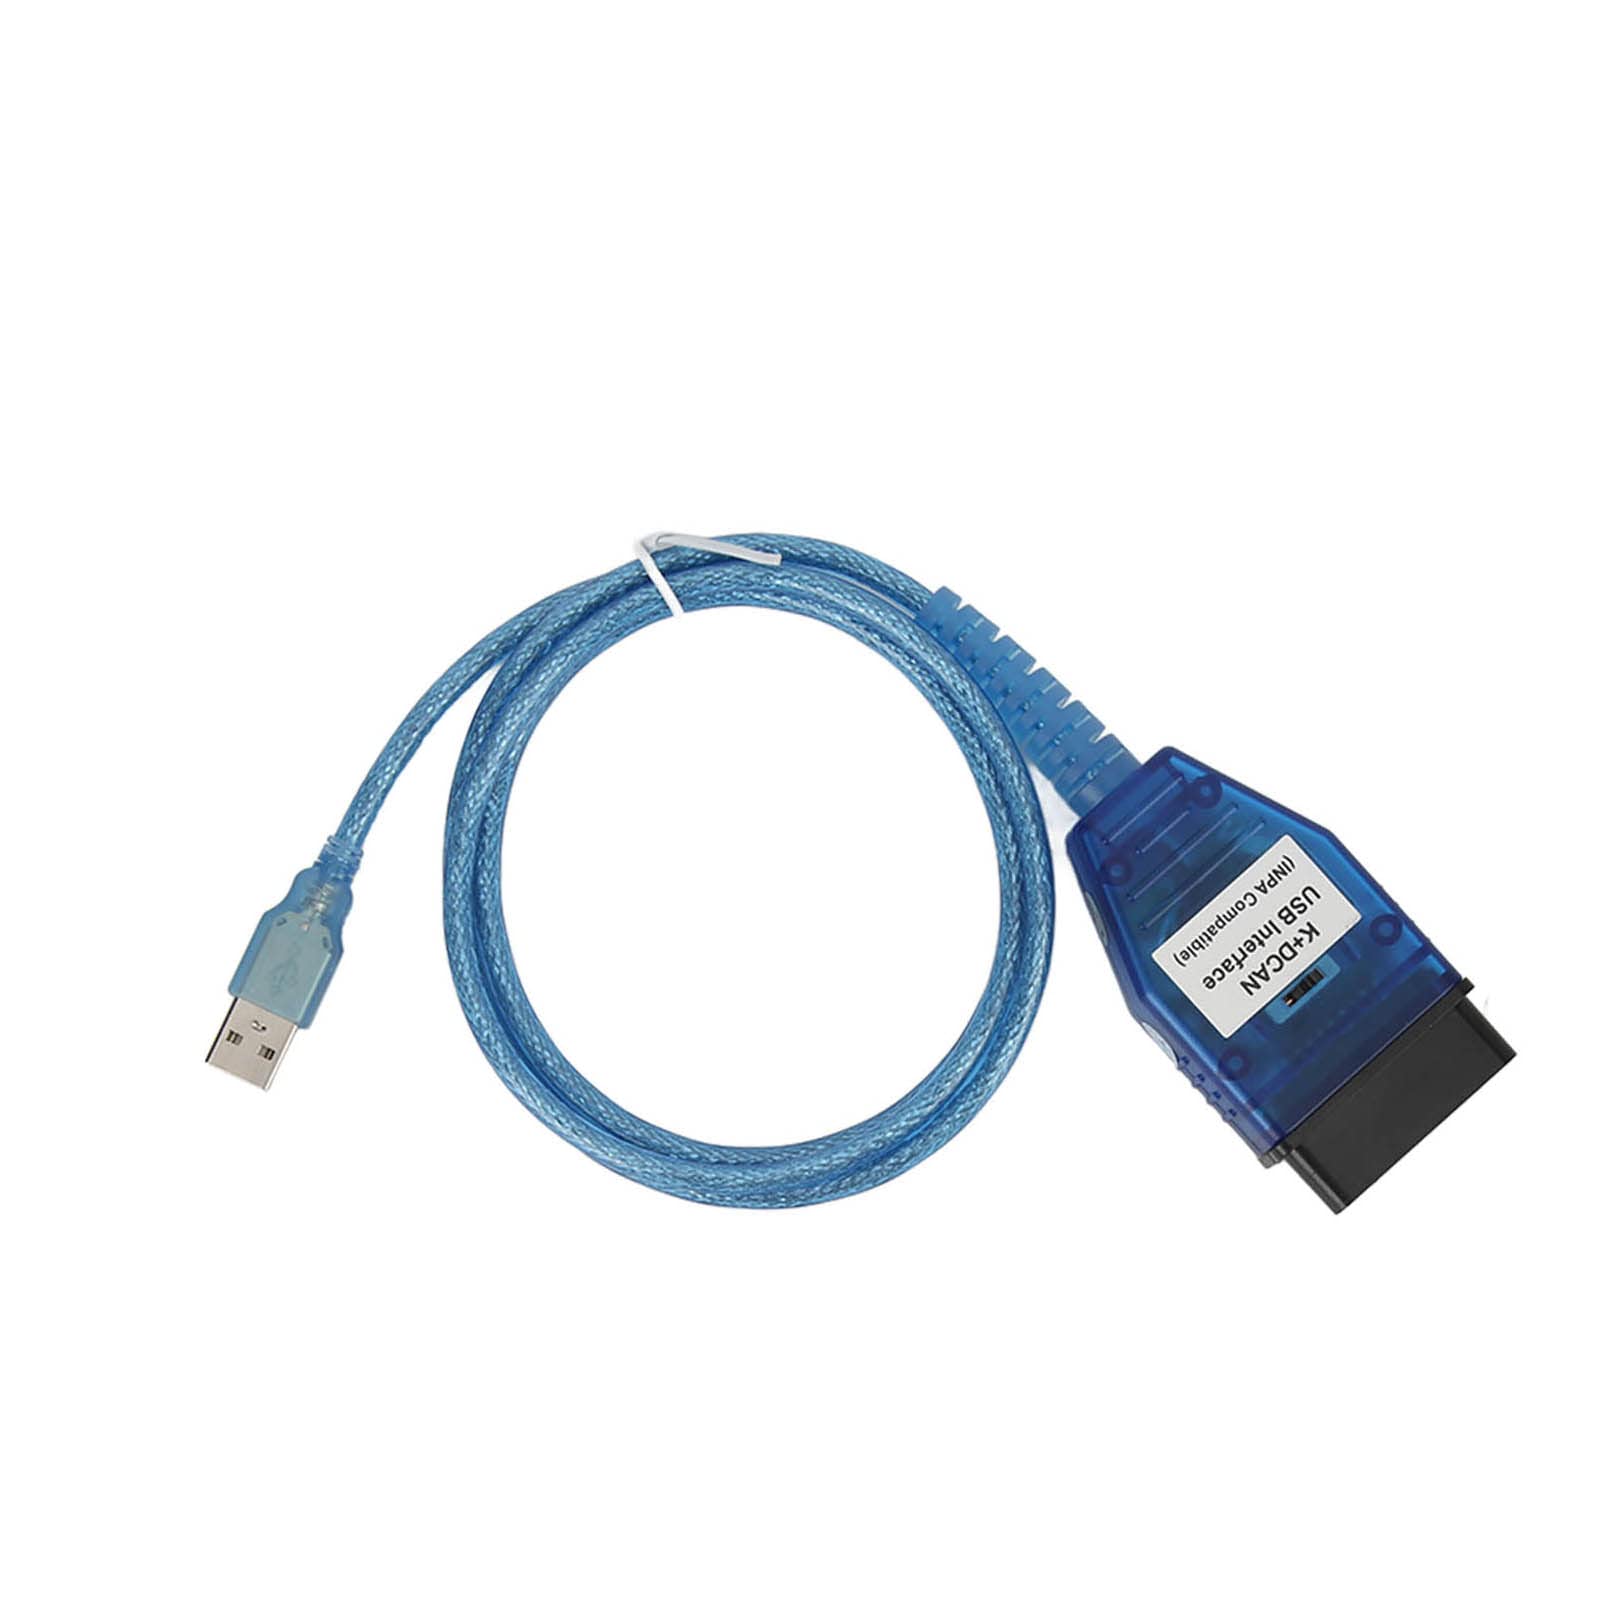 Tbest Auto-Diagnosewerkzeugkabel, K D CAN OBD2-Kabel FT232RL-Chip mit Schalter, USB-Schnittstelle, Ersatz für E60 E61 E70 E81 8-poliges K-LINE-Protokoll von Tbest